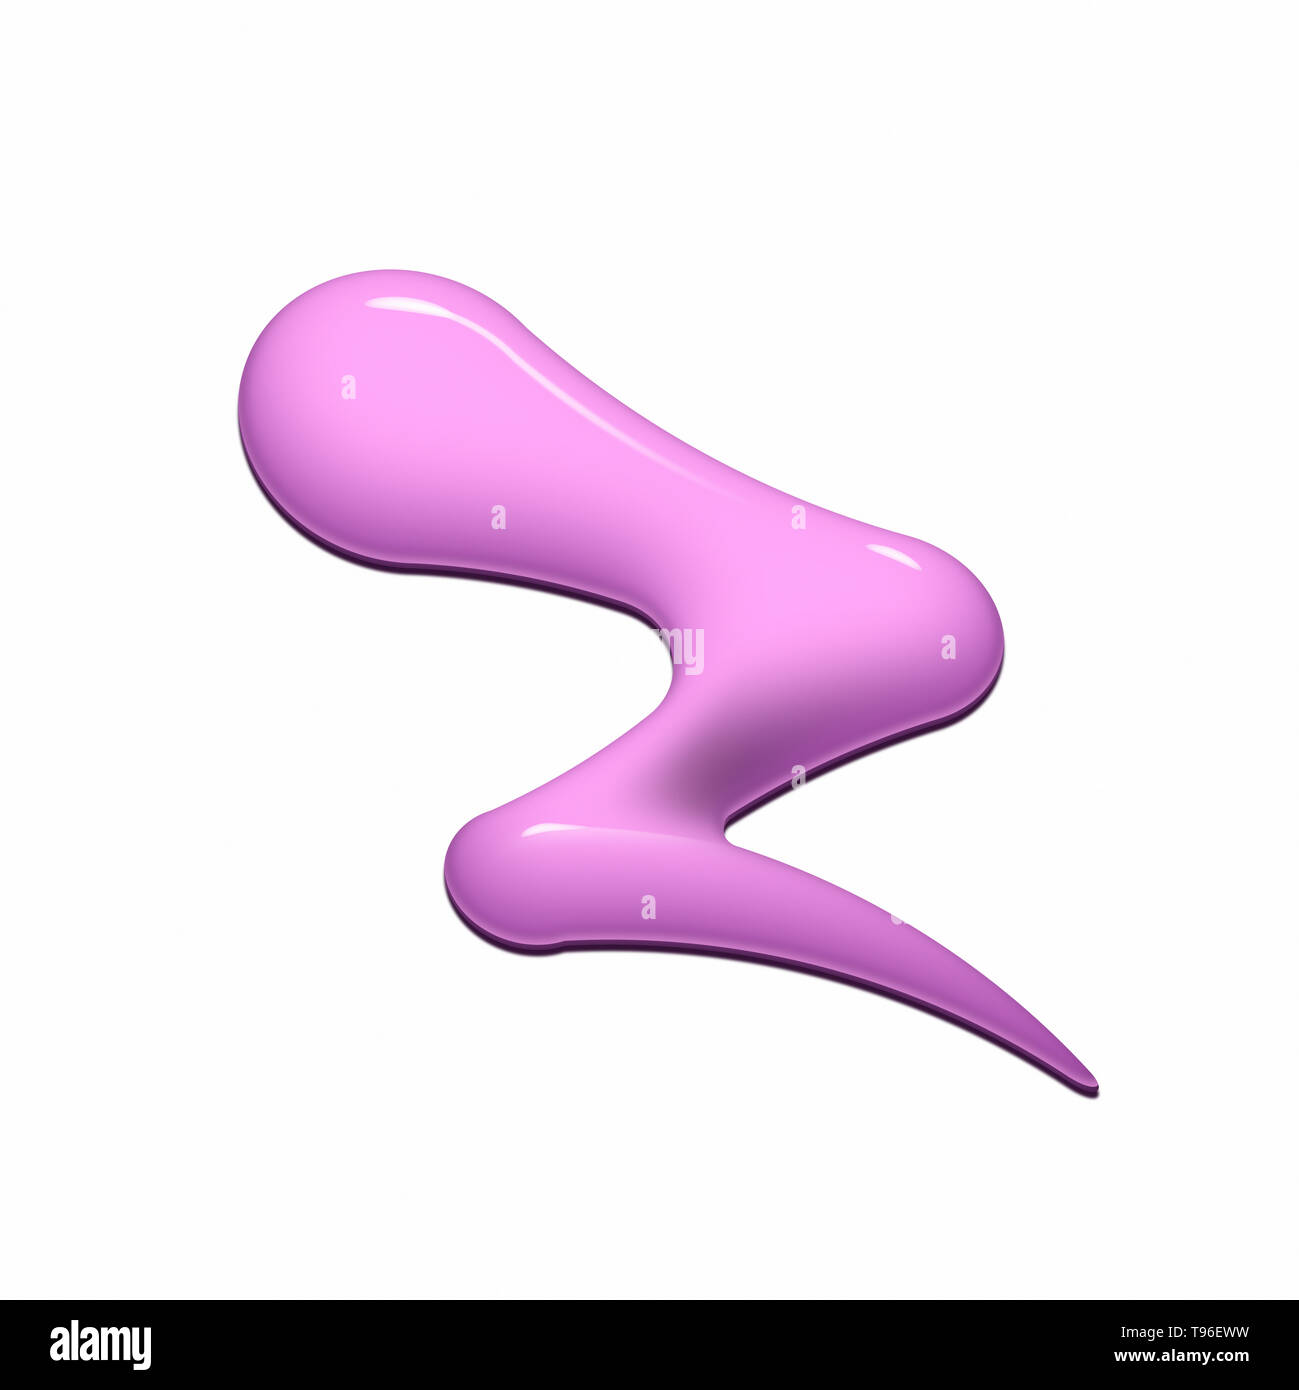 Imagen Digital de vertieron pintura rosa en forma de zigzag sobre fondo blanco. Foto de stock